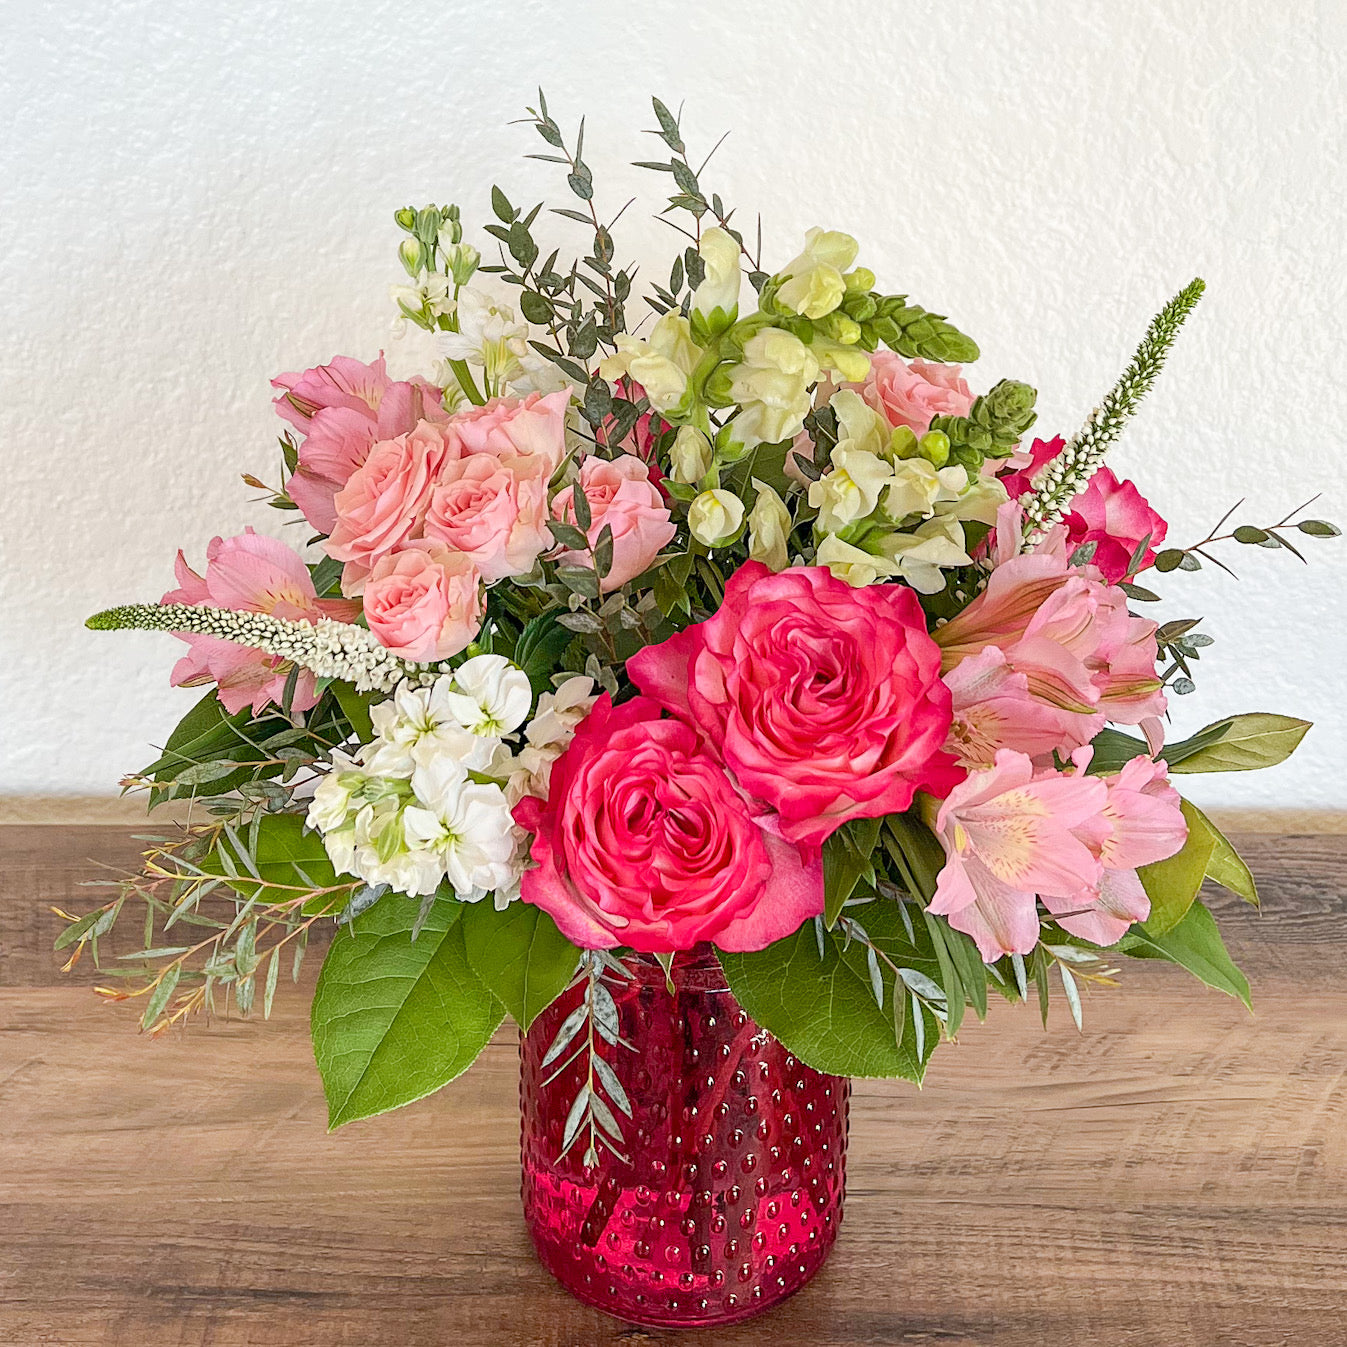 Ballard's Pink Radiance Bouquet